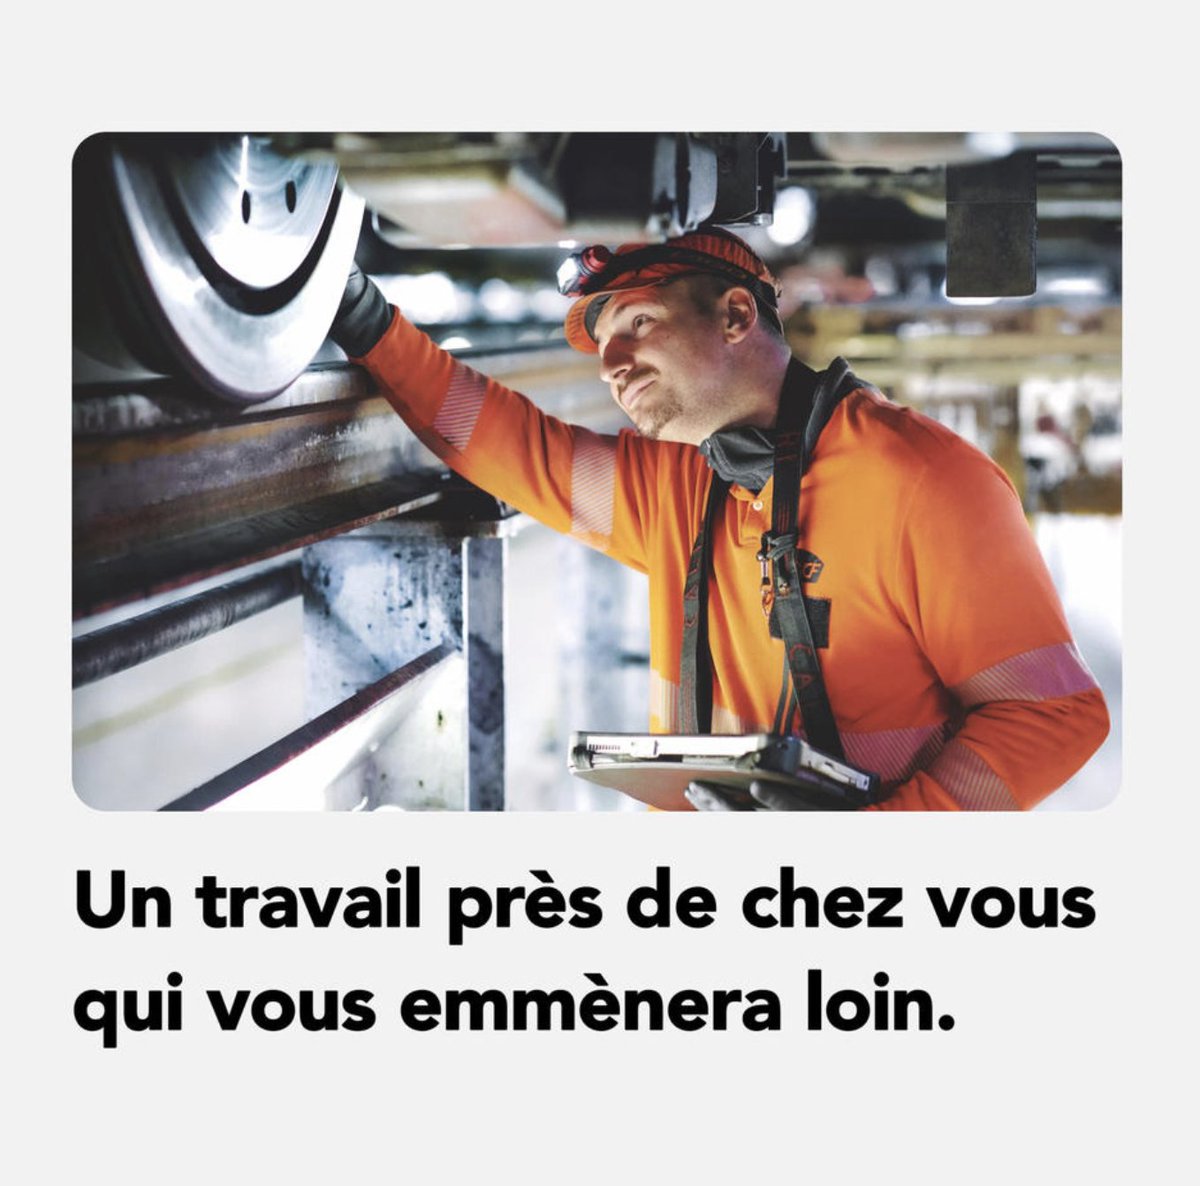 📢 #TransilienSNCFVoyageurs recrute des mécaniciennes et mécaniciens pour son futur site de maintenance de Mantes-la-Jolie. ✅Envoyez votre CV ! 👉Postulez directement ici : tinyurl.com/488c69xb #Job #Emploi #OffreEmploi @SNCF_Recrute